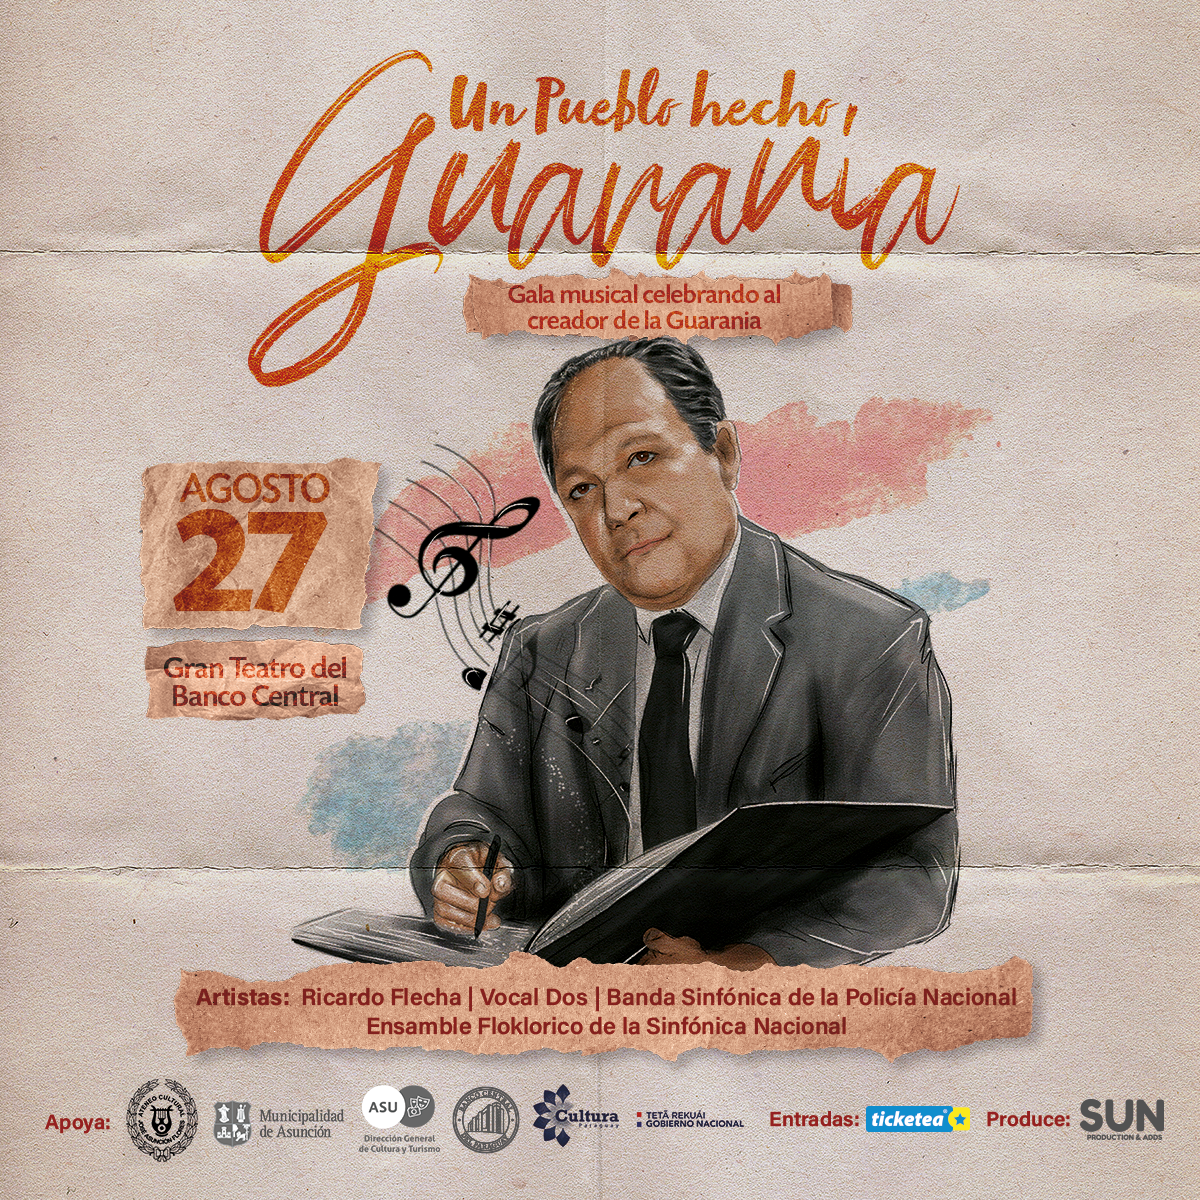 “Un Pueblo Hecho Guarania”, gala musical celebrando al creador de la Guarania imagen